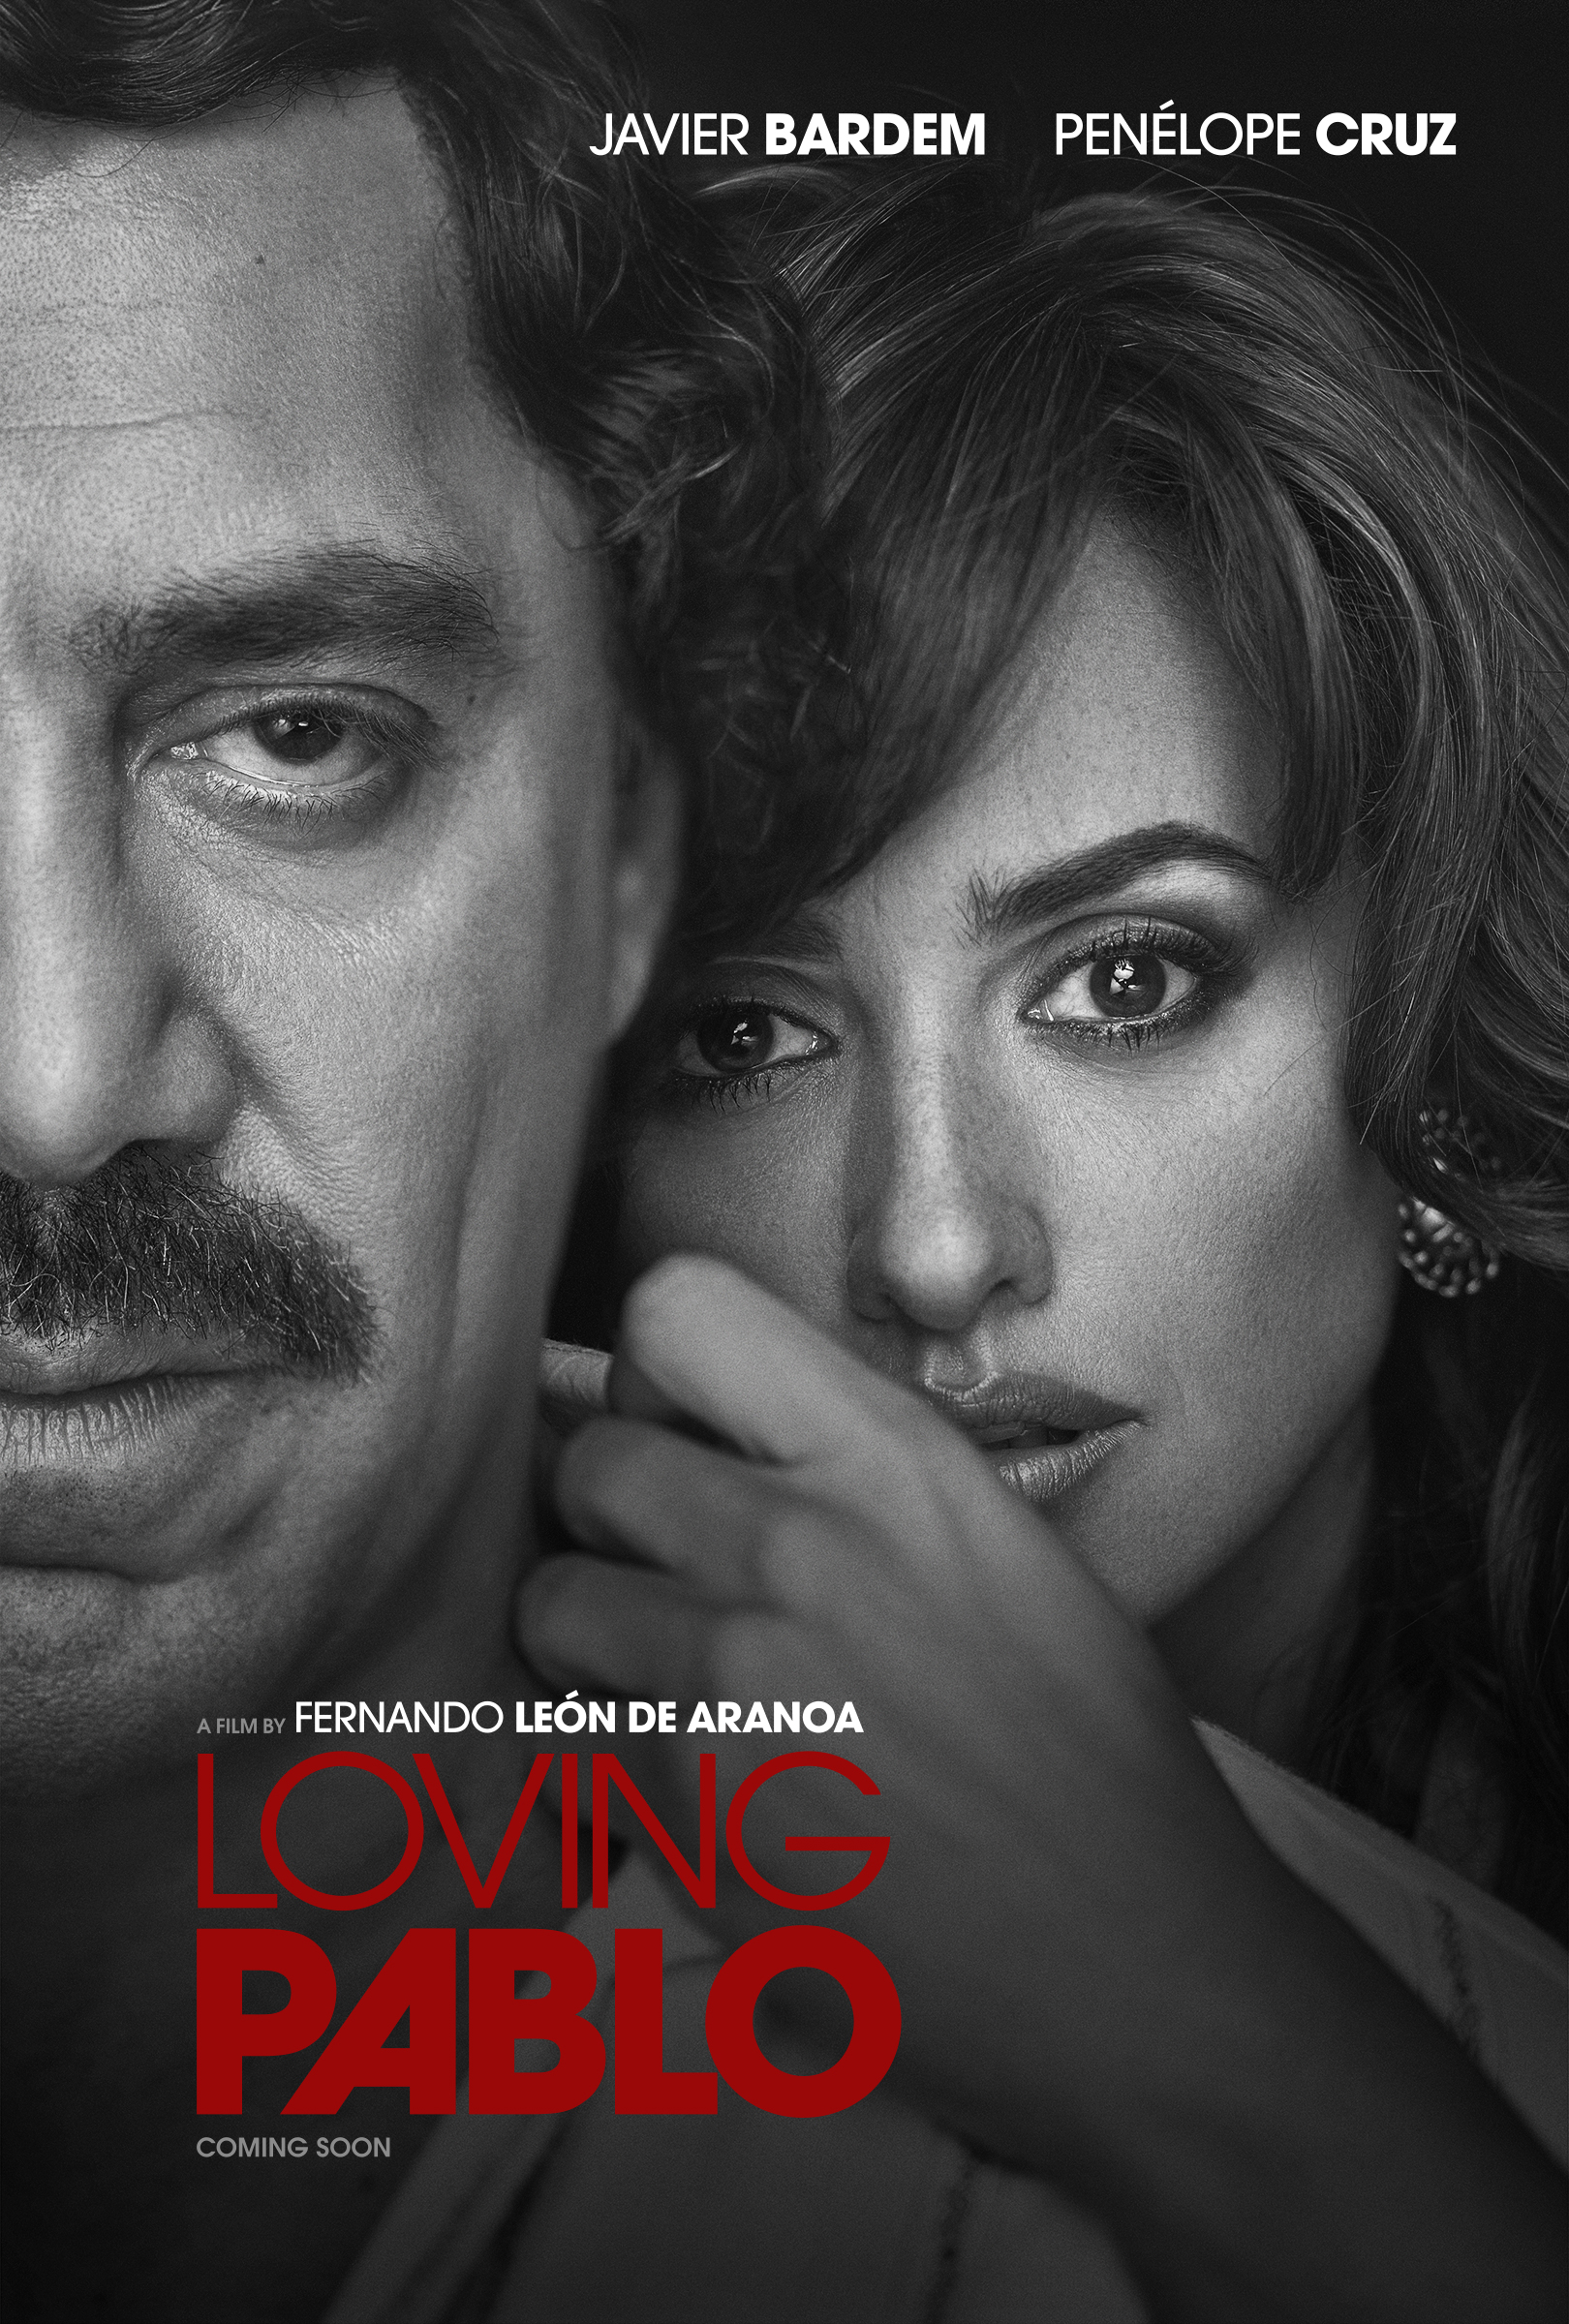 ดูหนังออนไลน์ Loving Pablo (2017) ปาโบล เอสโกบาร์ ด้วยรักและความตาย